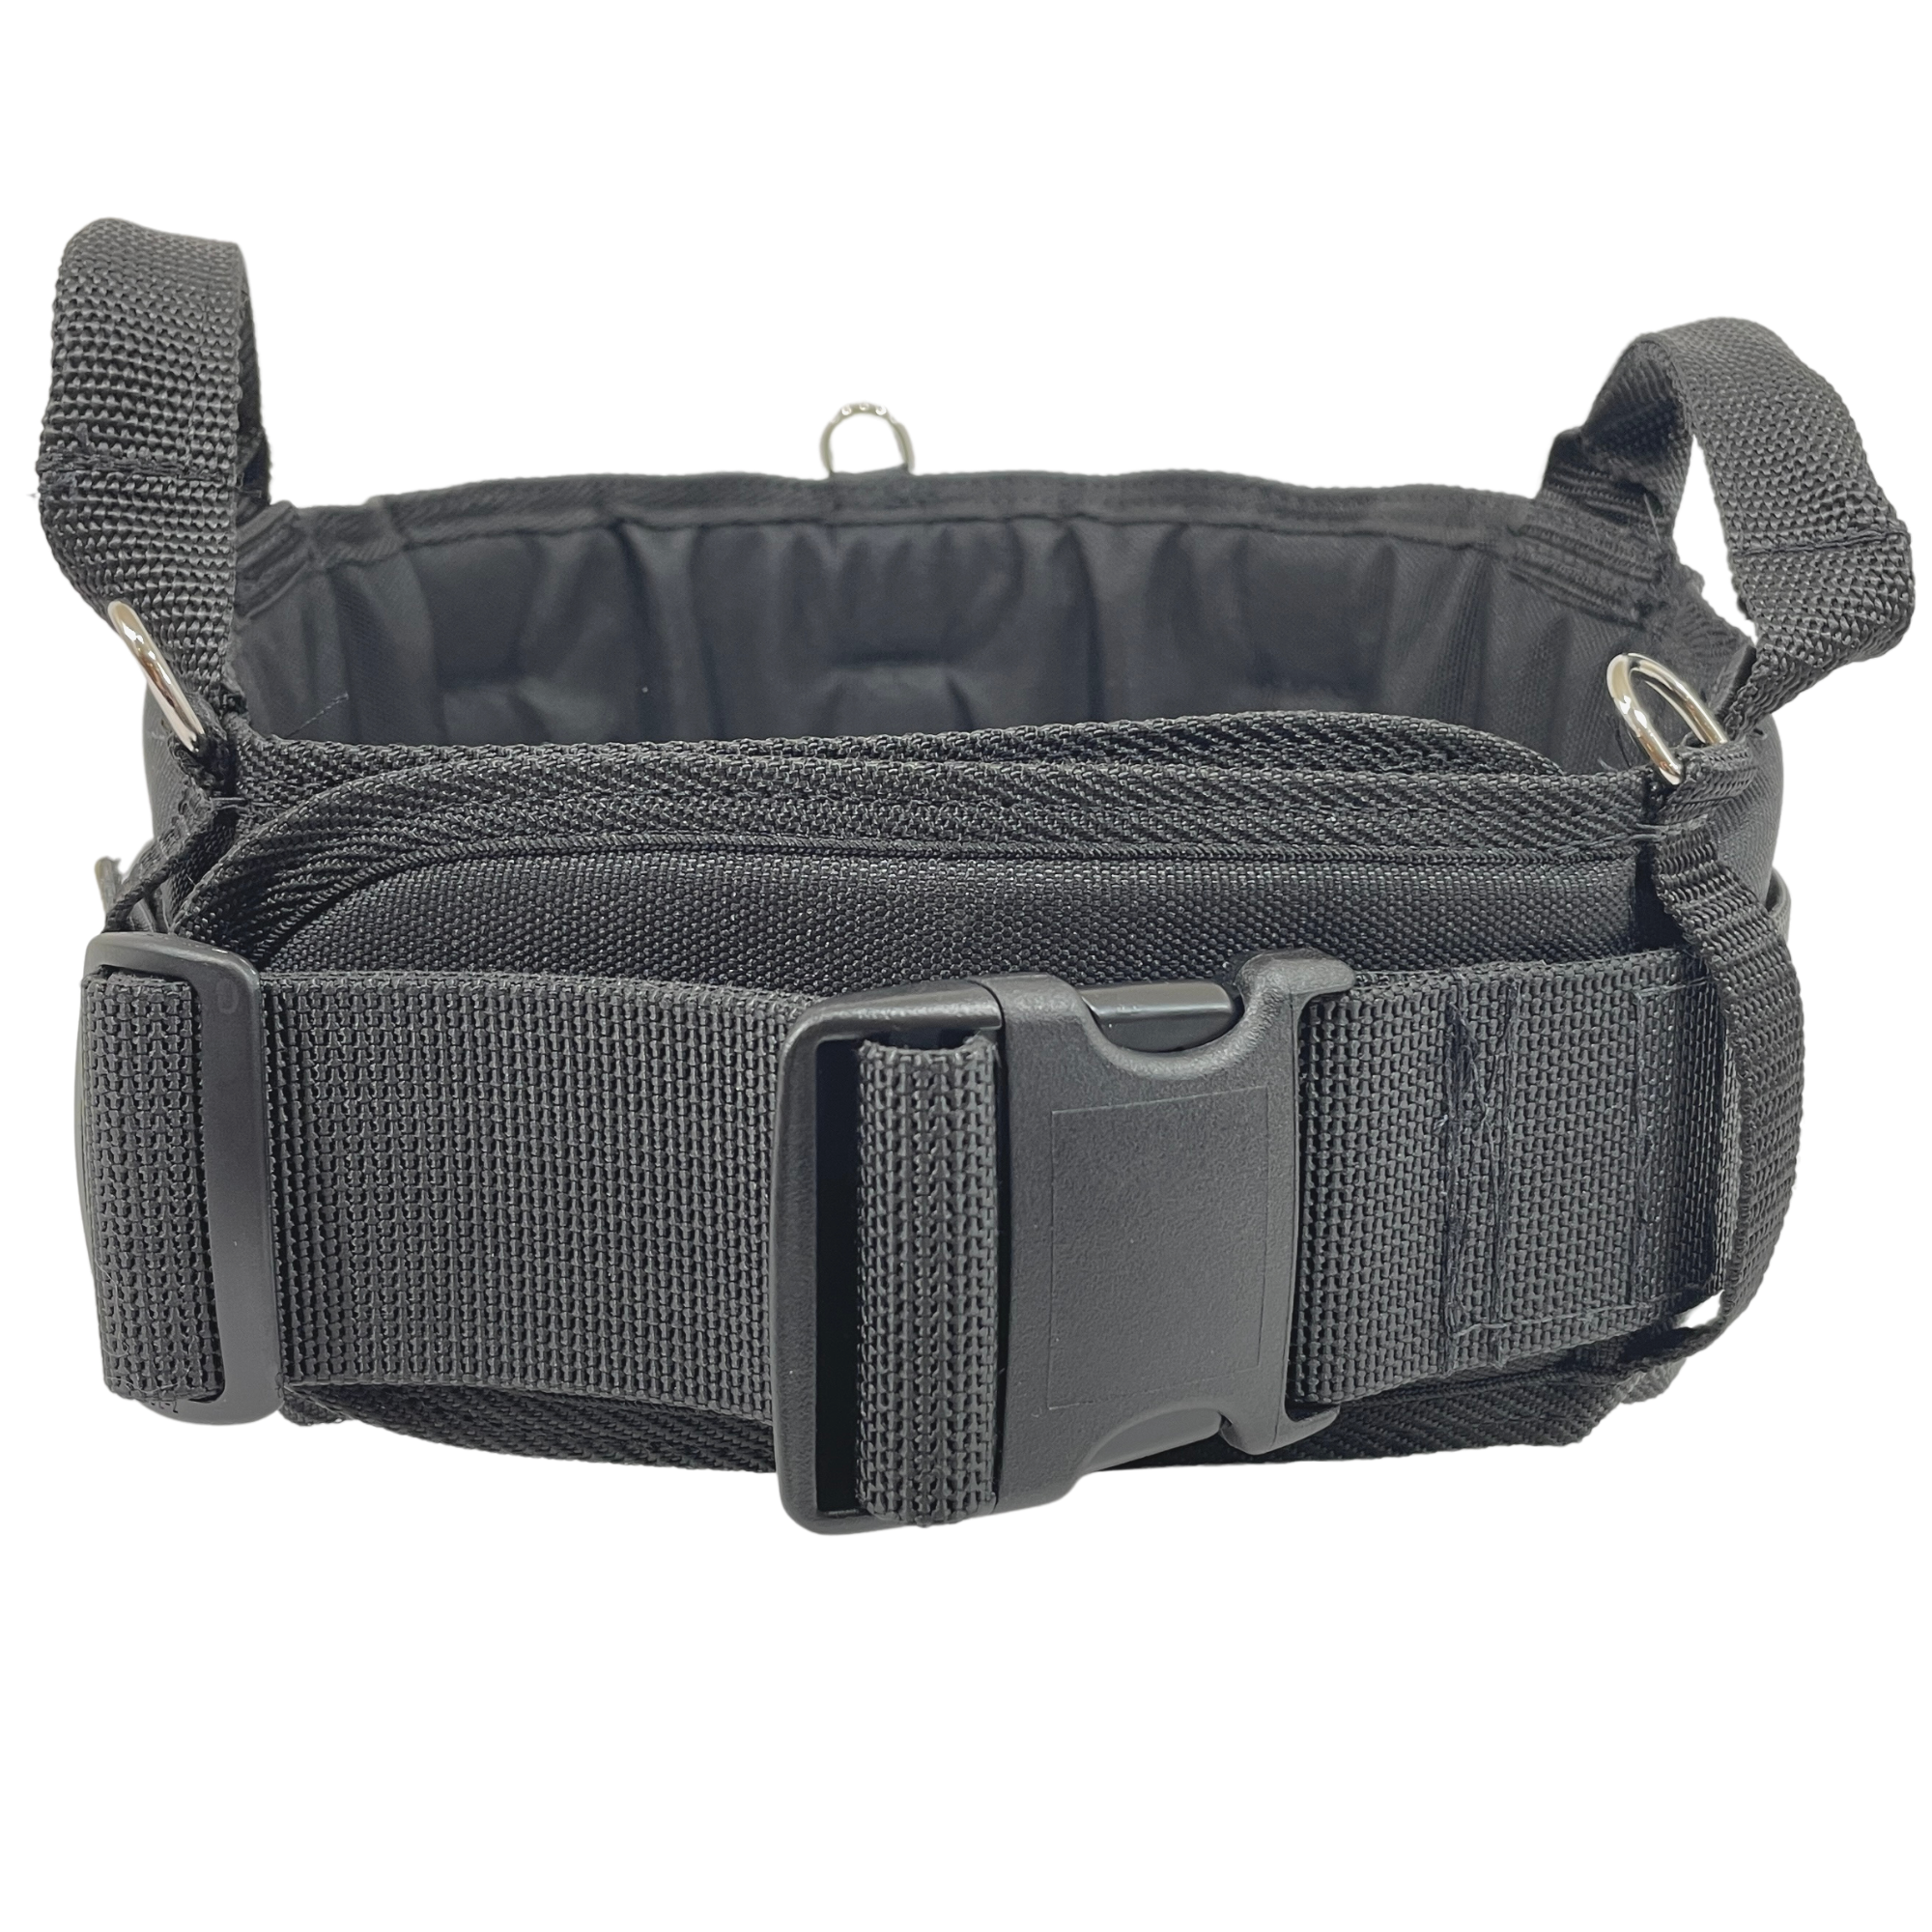 Boulder Bag MAX Comfort Back Support Tool Belt - w/ Quick Release